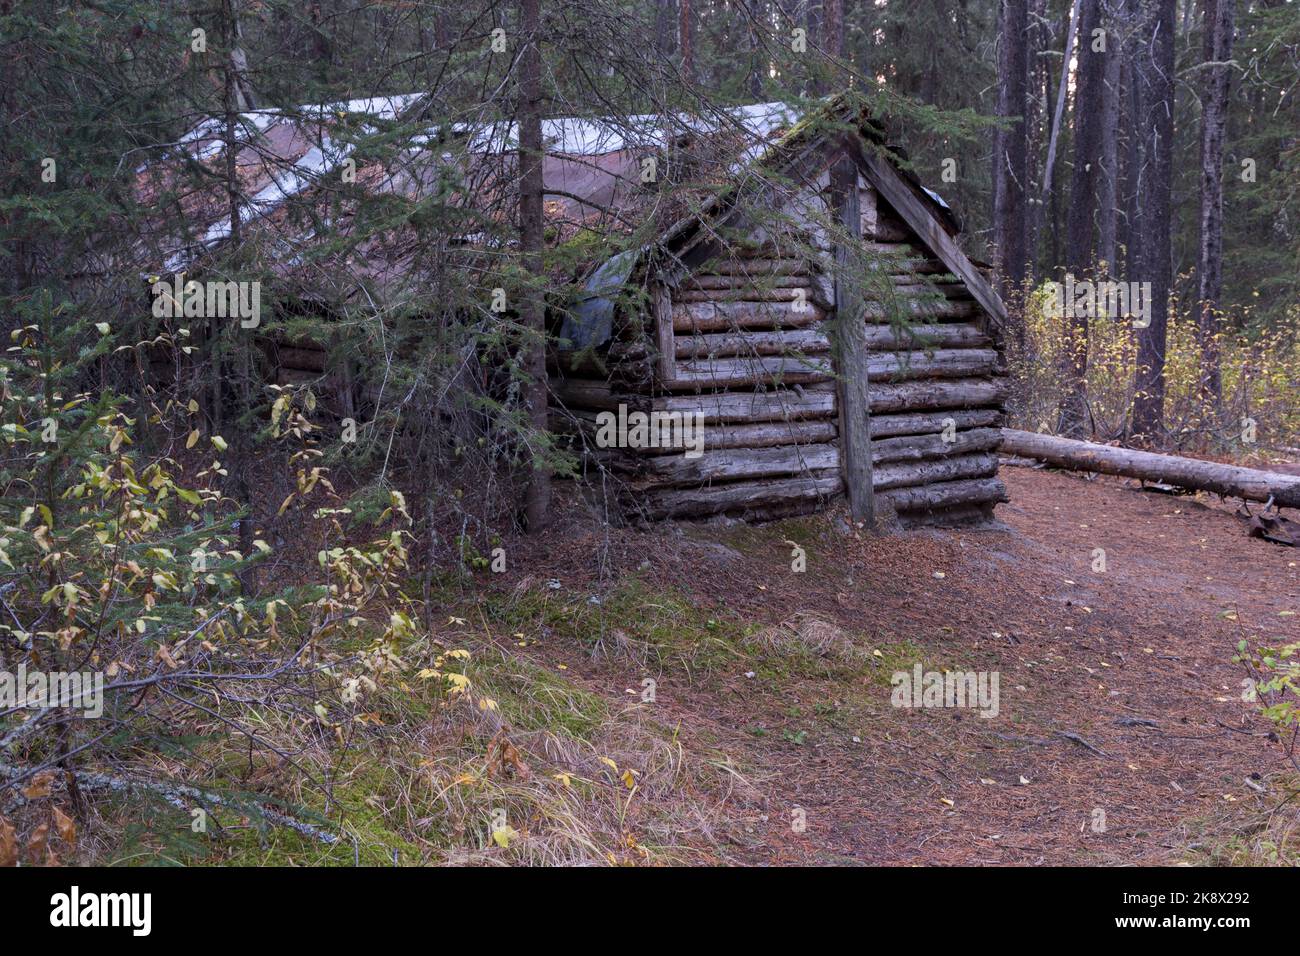 L'ermite d'Inglismaldie, primitive secrète Old Heritage Wood Log Cabin pourrissent dans Wilderness Forest. Parc national Banff Alberta Canada Banque D'Images